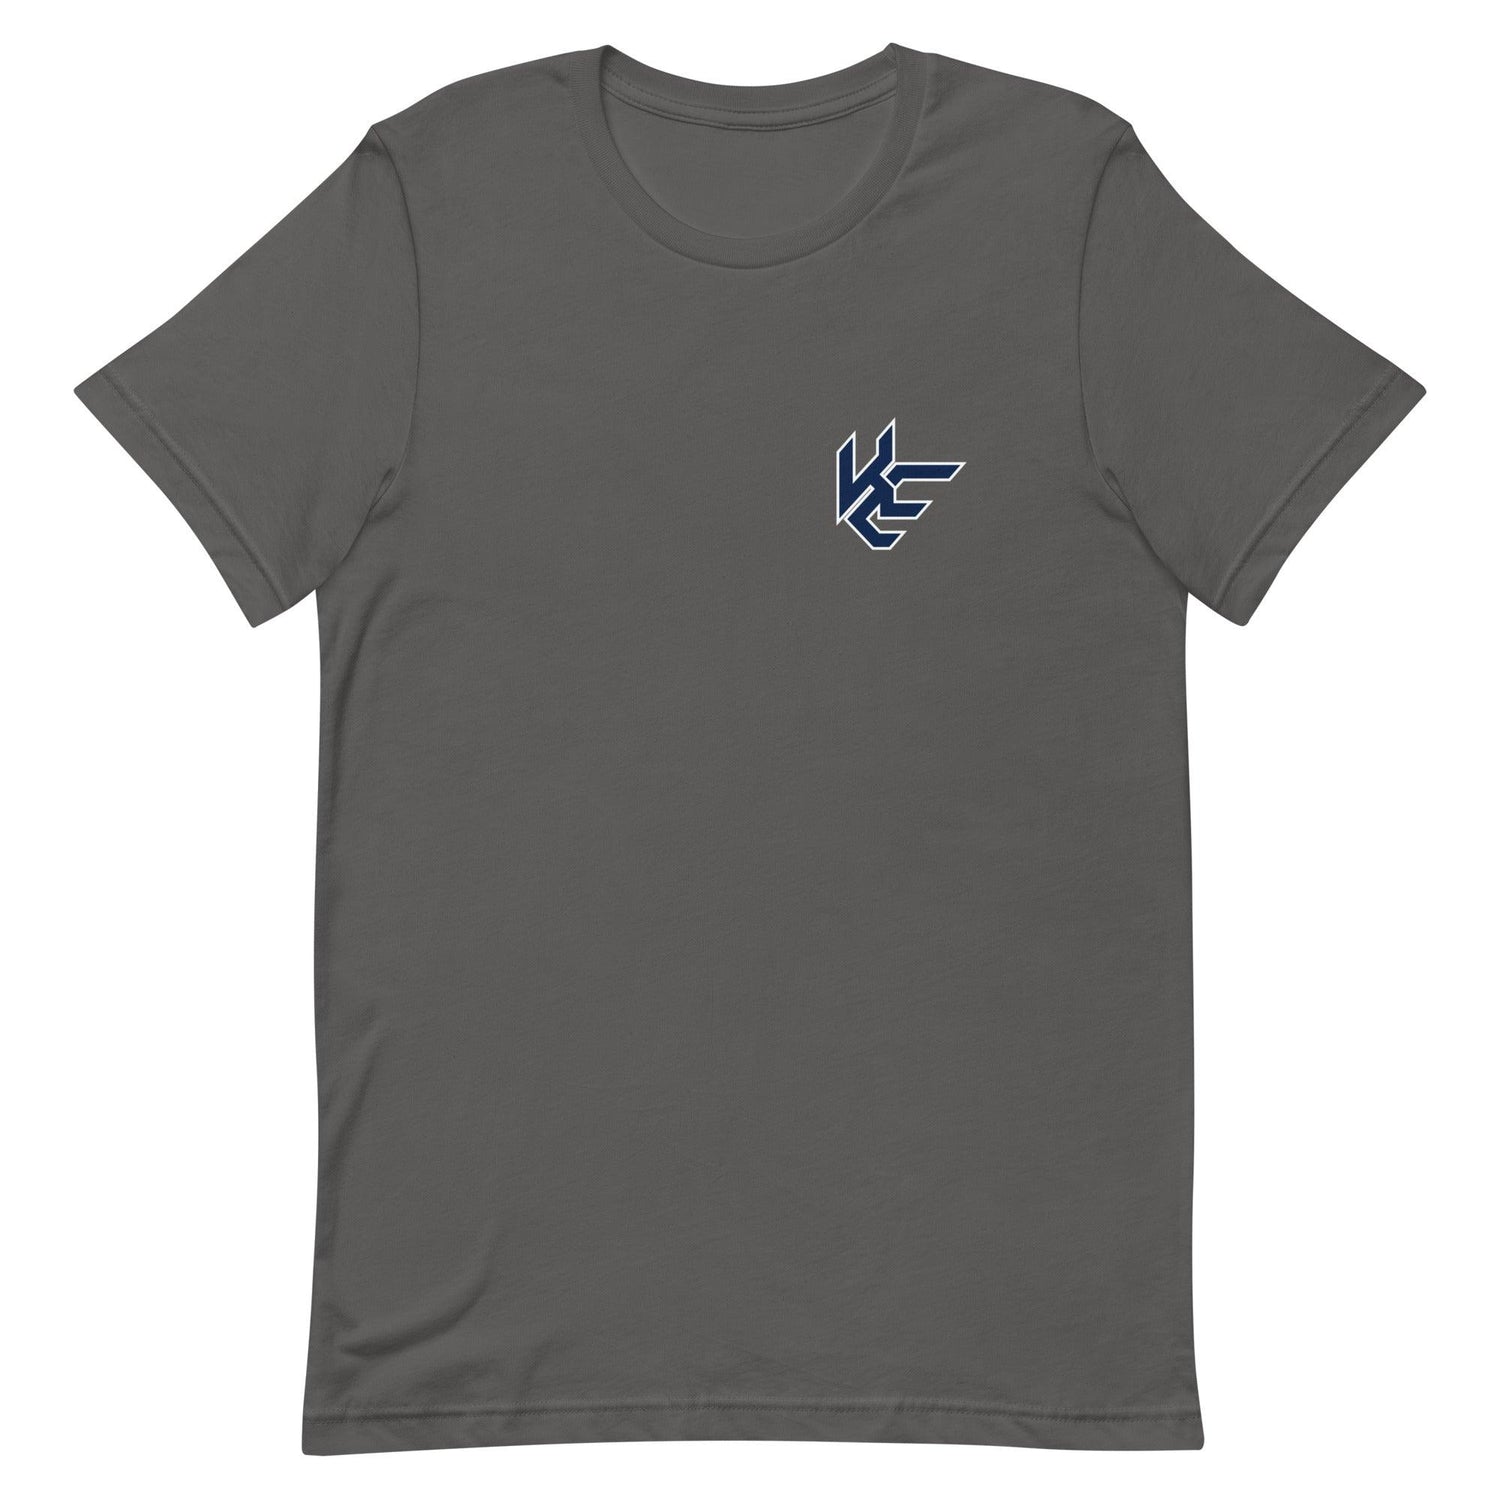 Katron Evans "Essential" t-shirt - Fan Arch